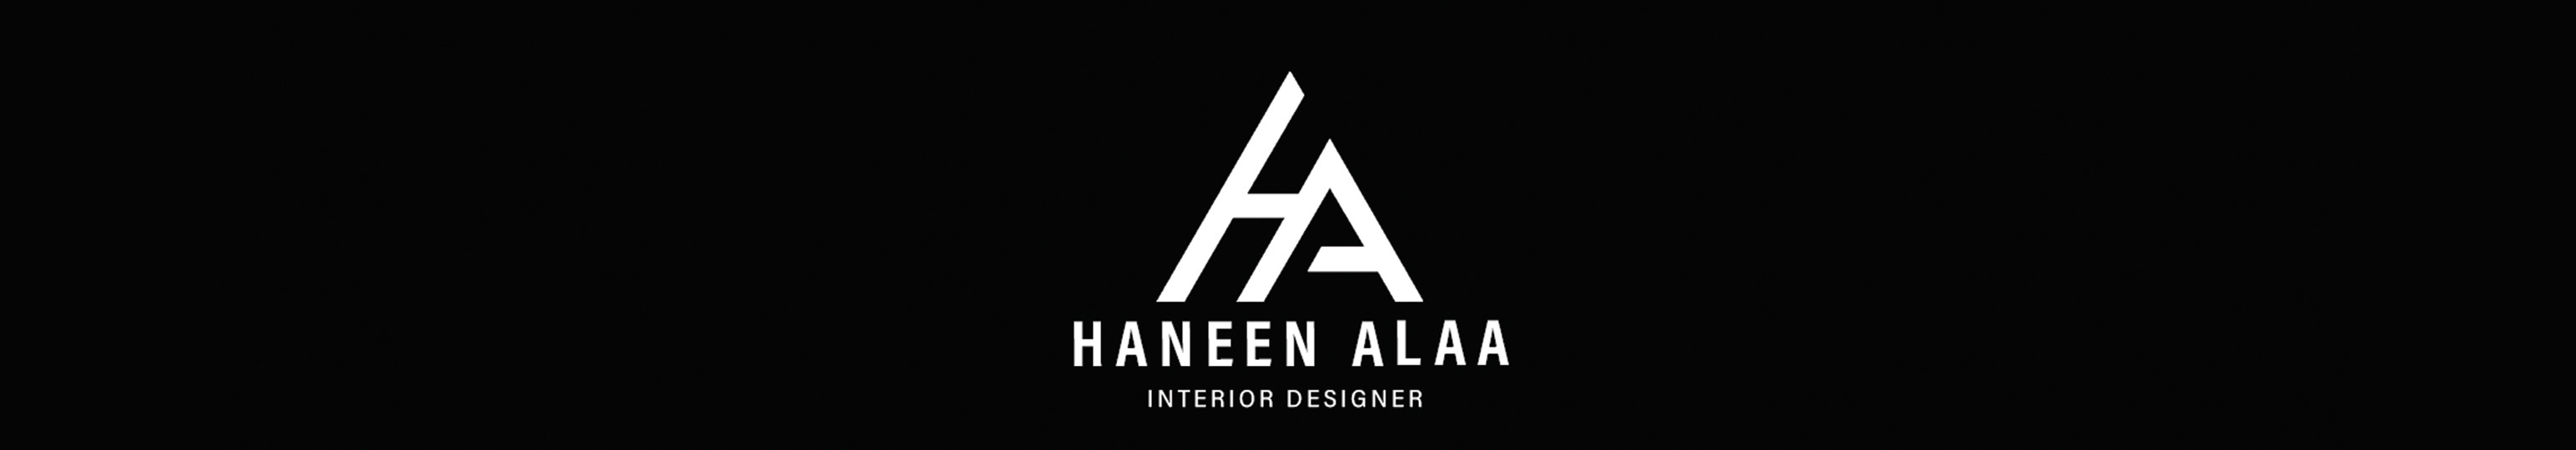 Haneen Alaa のプロファイルバナー